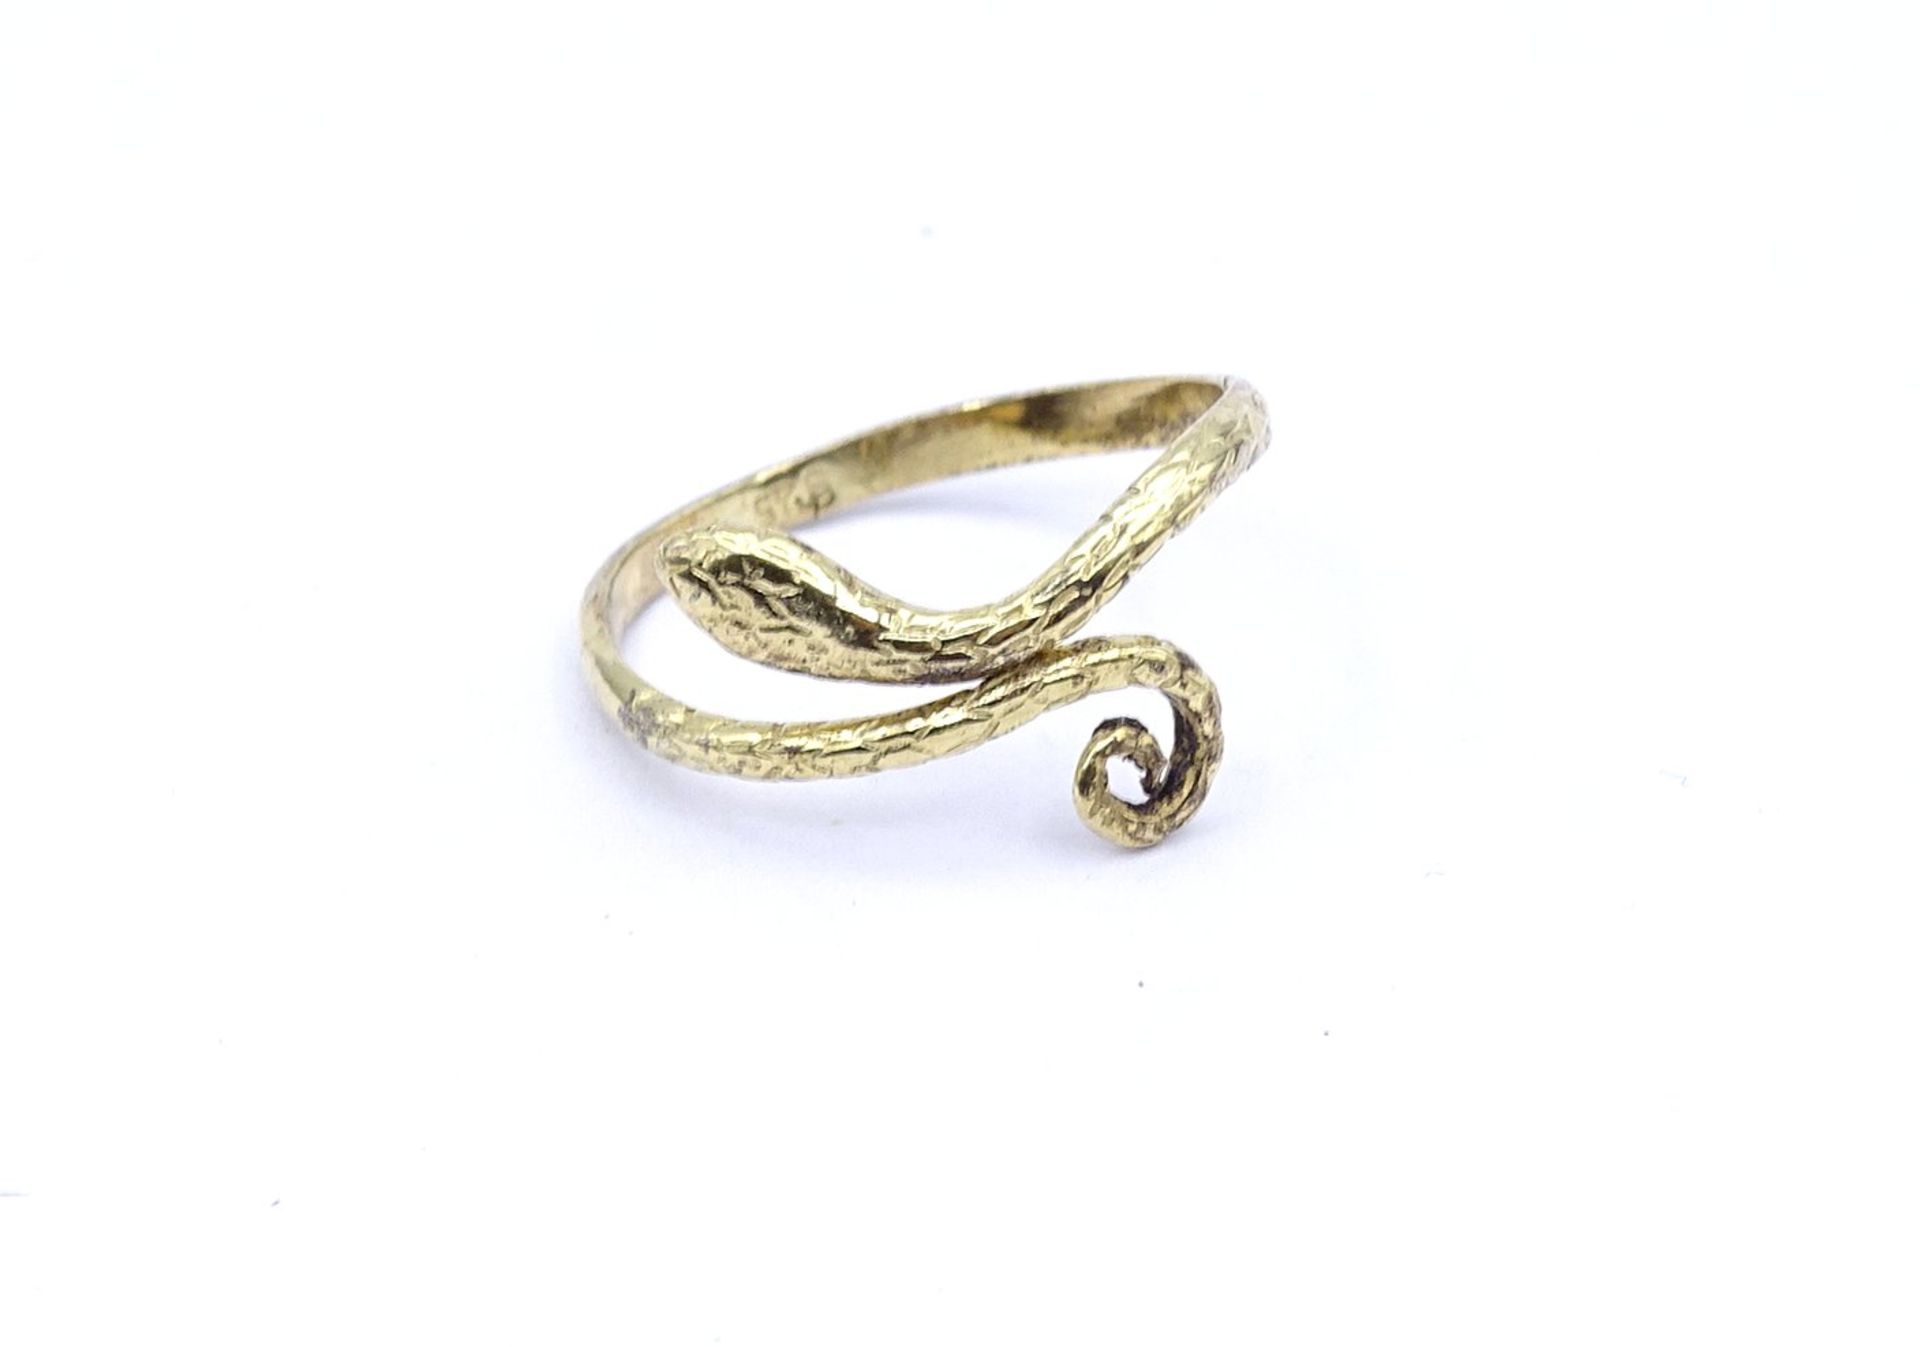 Schlangenring, Silber 925/000 vergoldet, 1,3g., RG 52 (offene Ringschiene)